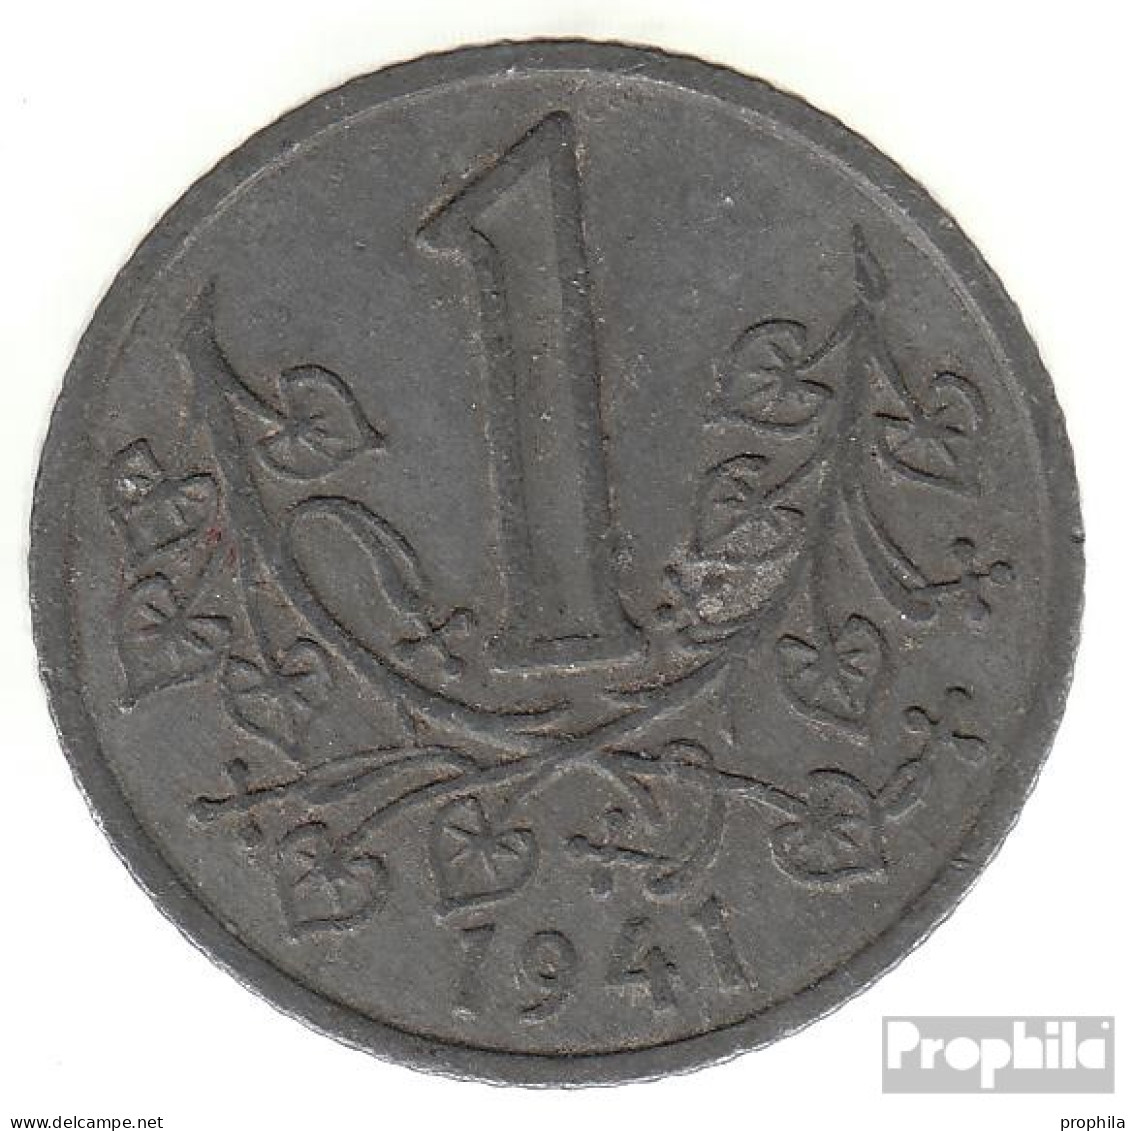 Böhmen Und Mähren Jägernr: 623 1943 Vorzüglich Zink Vorzüglich 1943 1 Krone Wappenlöwe - Military Coin Minting - WWII